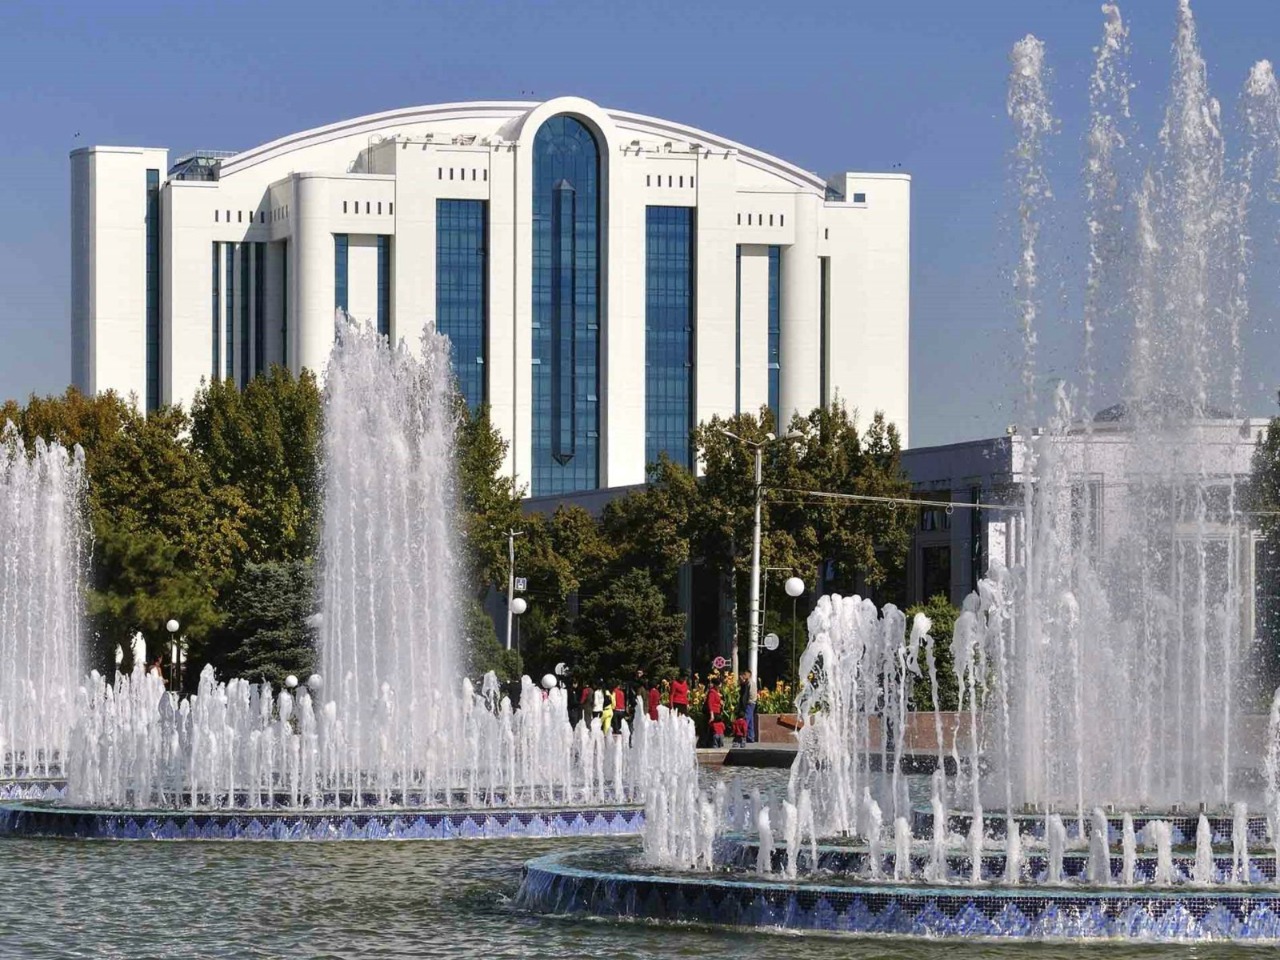 Ташкент: на перекрестке Великого Шелкового пути | Цена 150€, отзывы, описание экскурсии